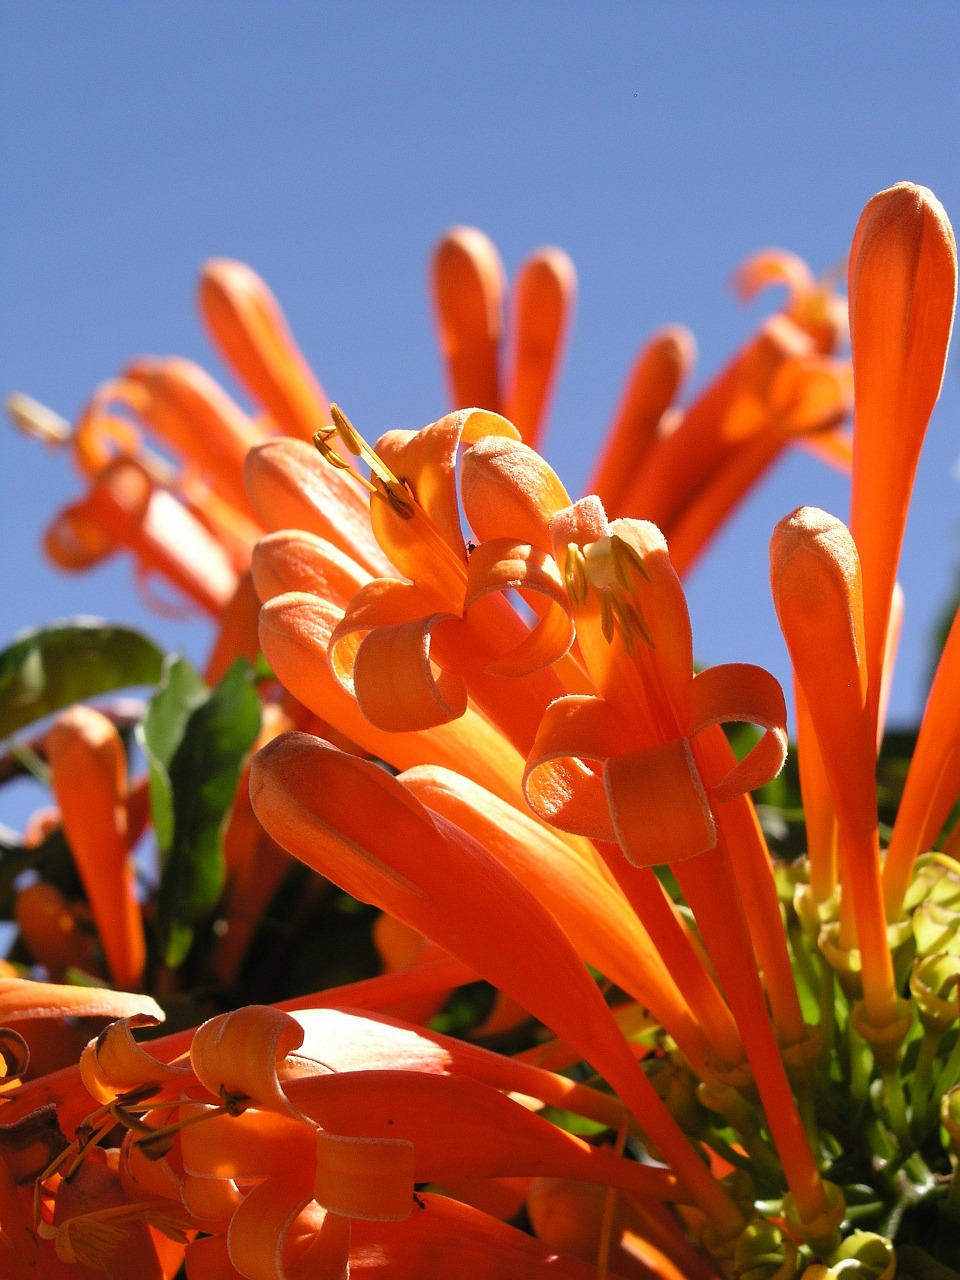 pyrostegia orange flower free photo